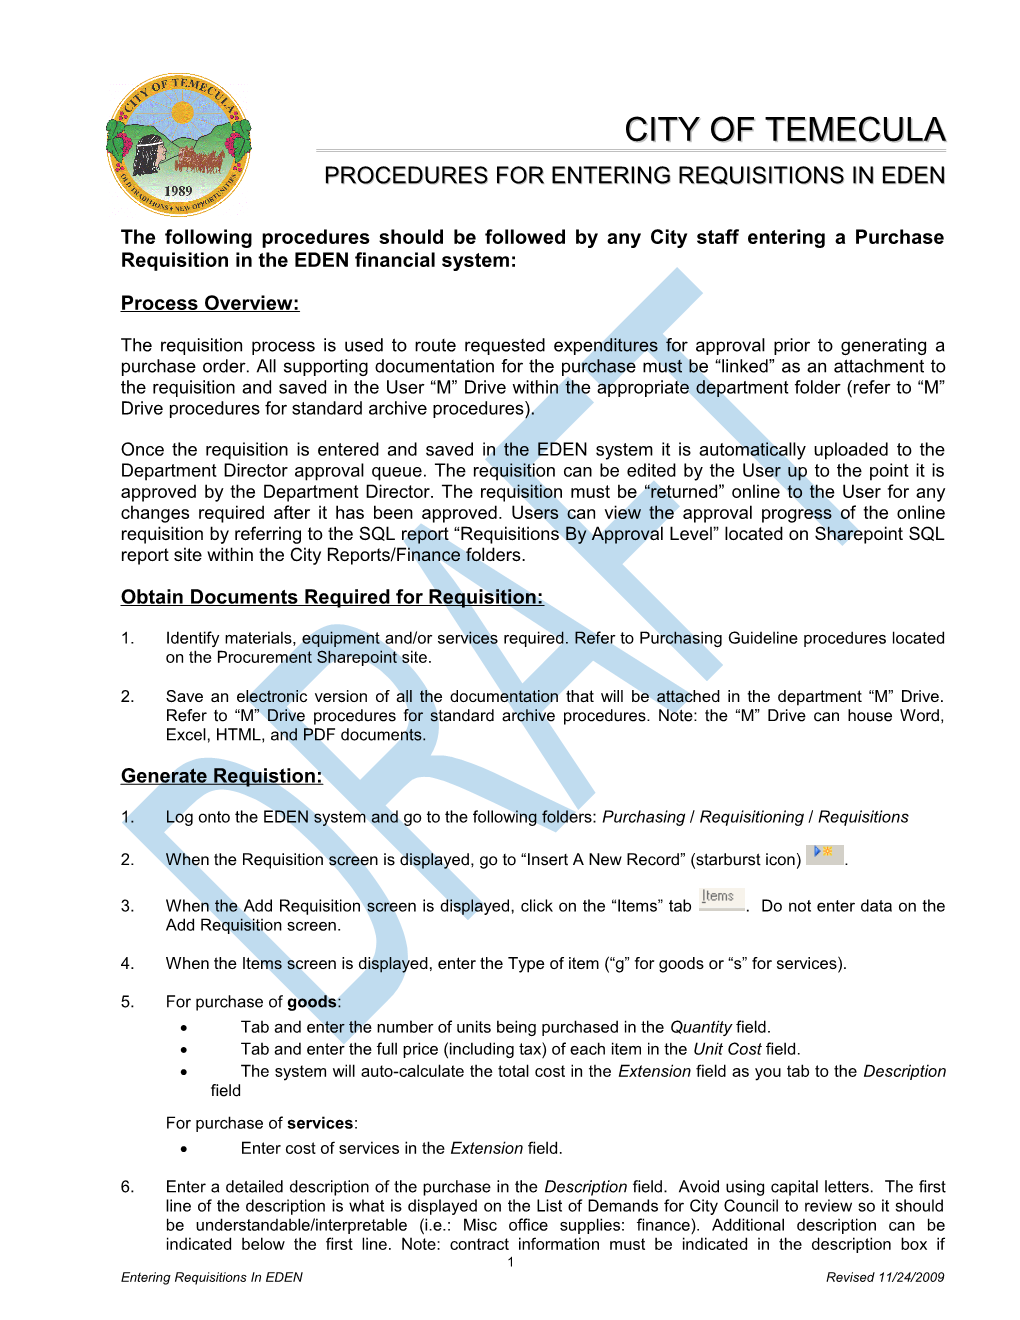 Procedures for Entering Requisitions in Eden